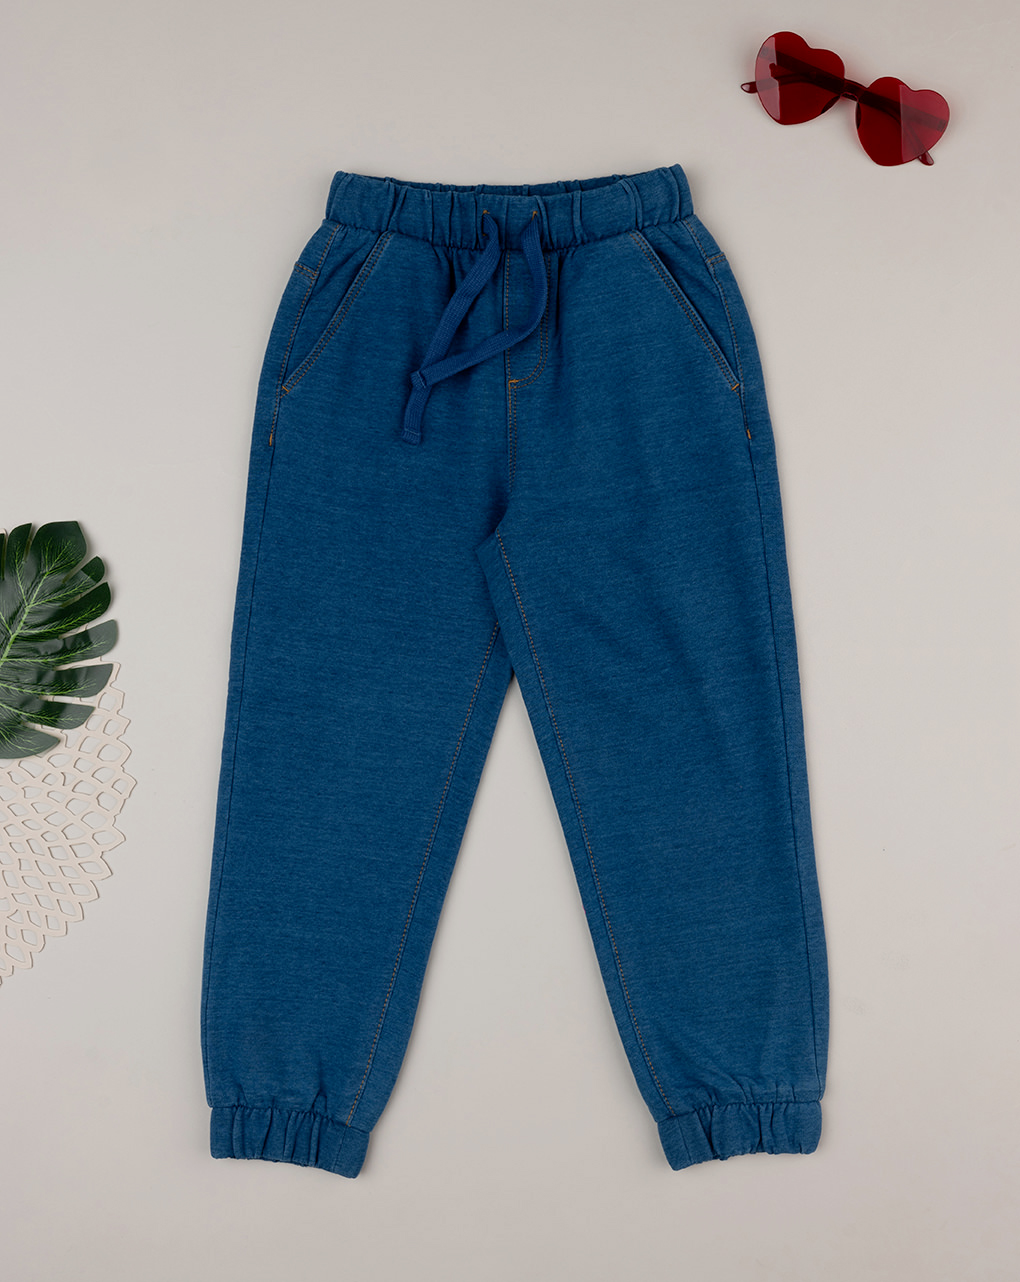 παιδικό τζιν παντελόνι μπλε για αγόρι - Prénatal